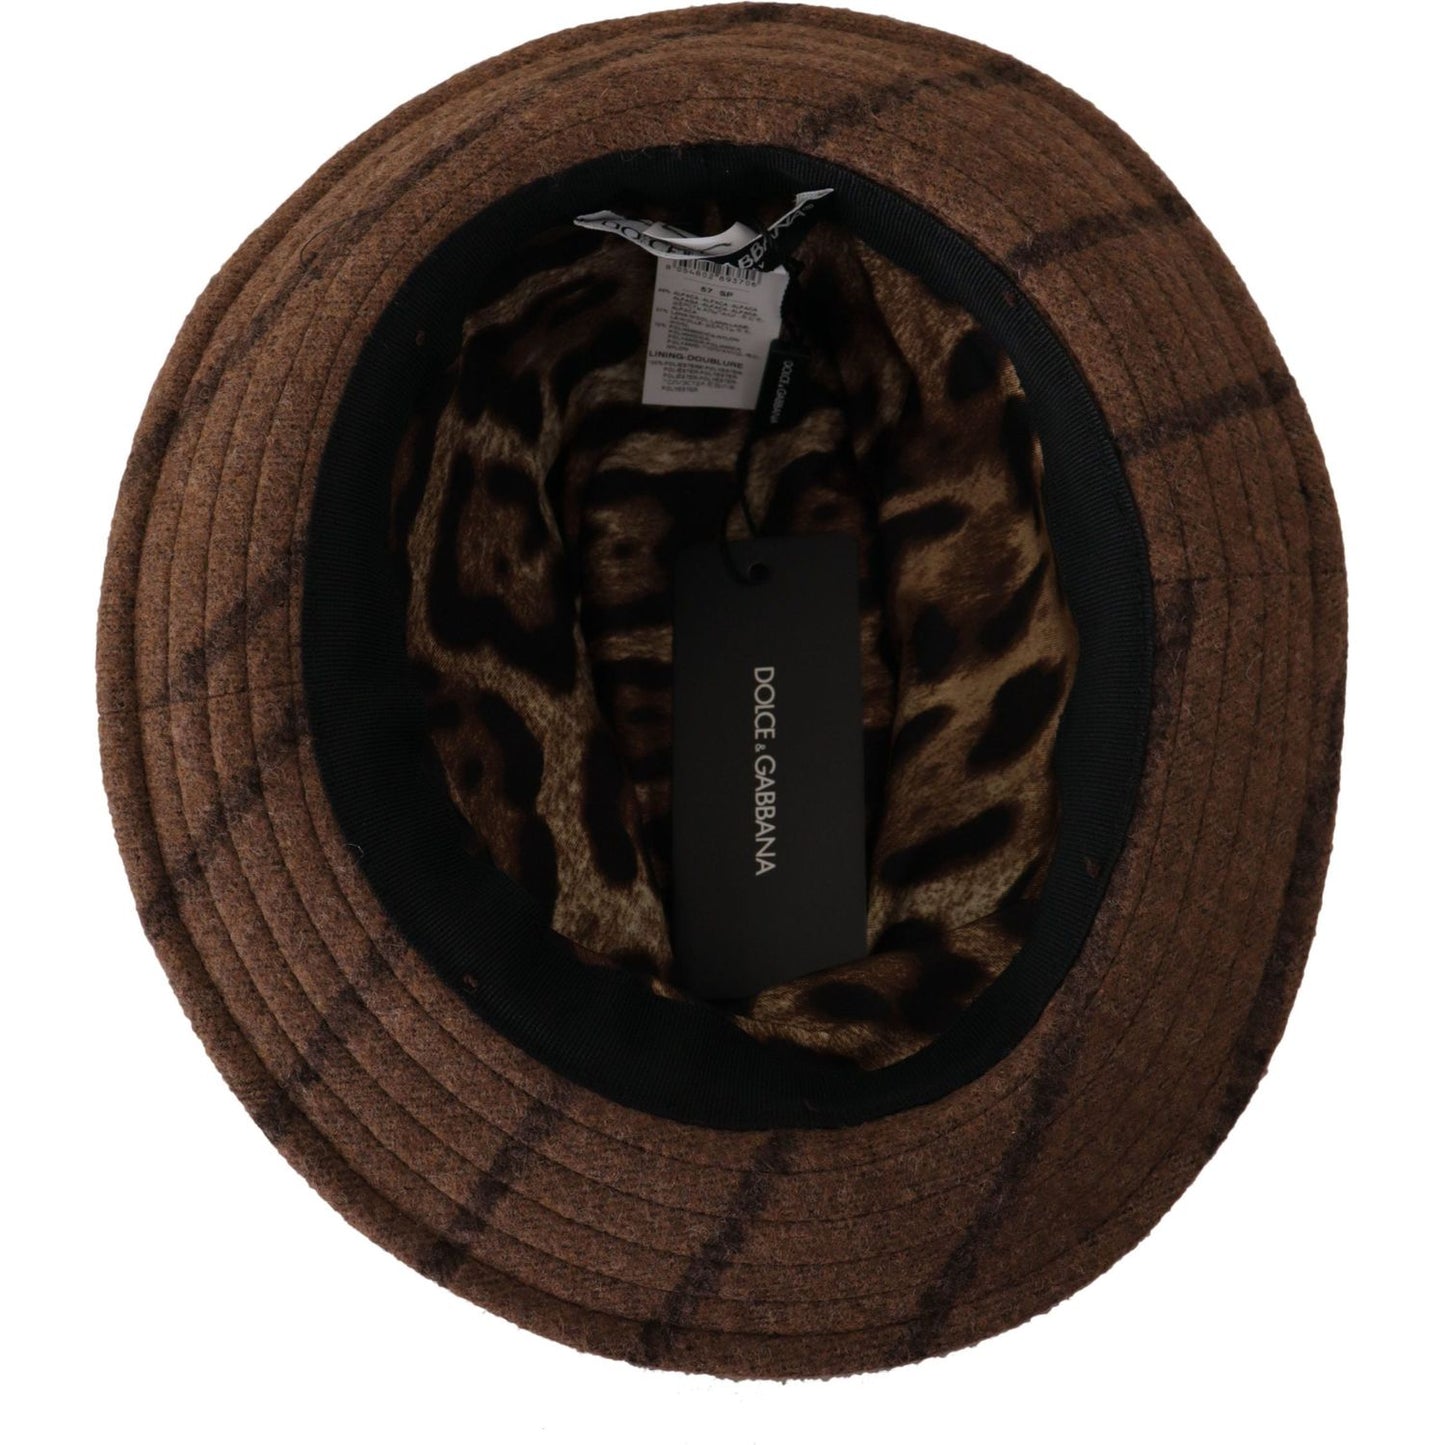 Dolce & Gabbana Elegant Wide Brim Fedora Hat brown-fedora-striped-print-summer-hat